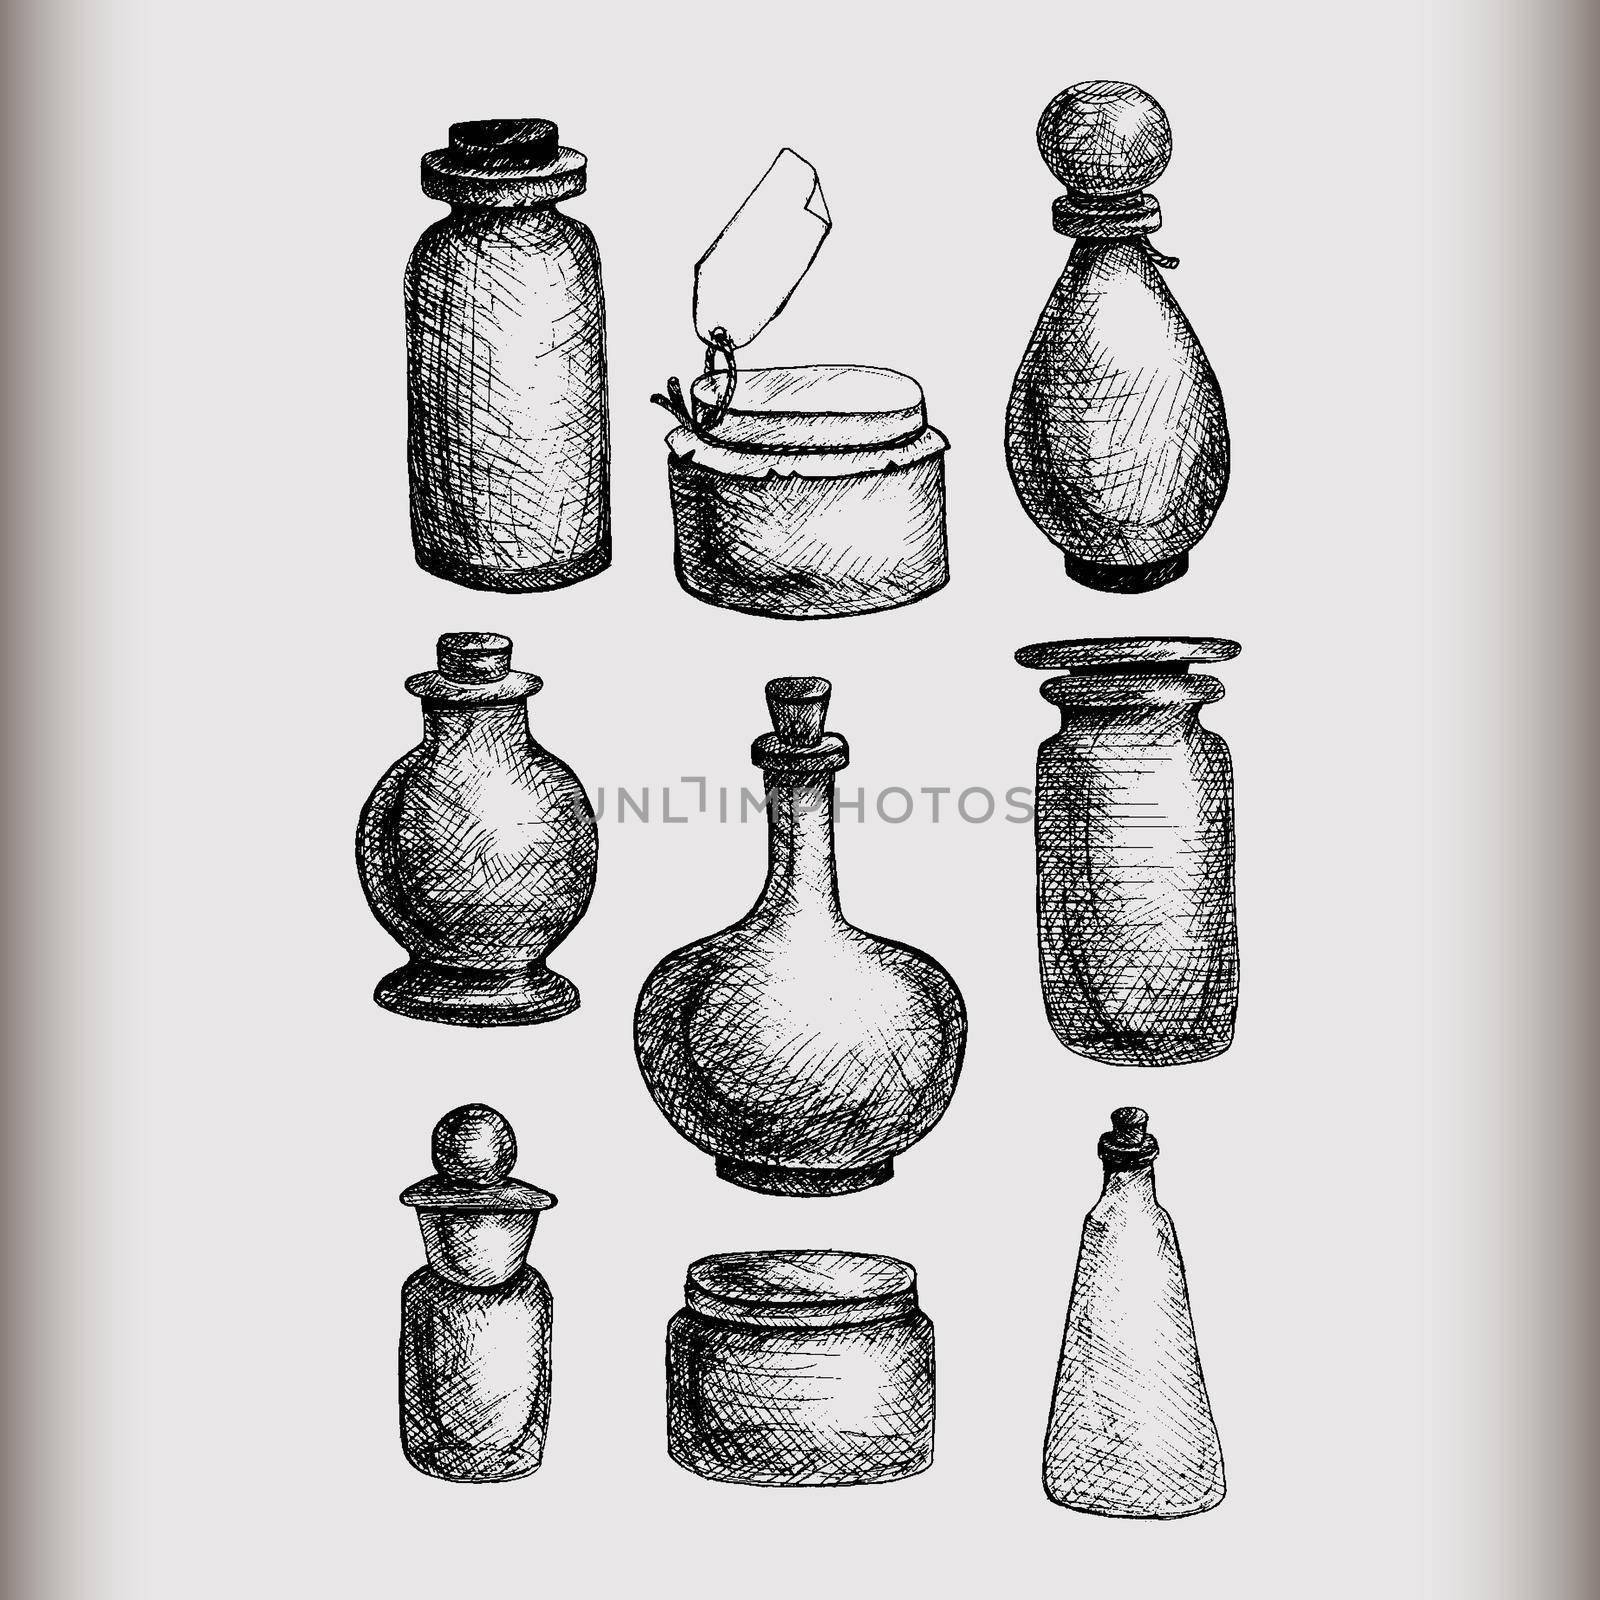 Vintage jars and bottles by barsrsind